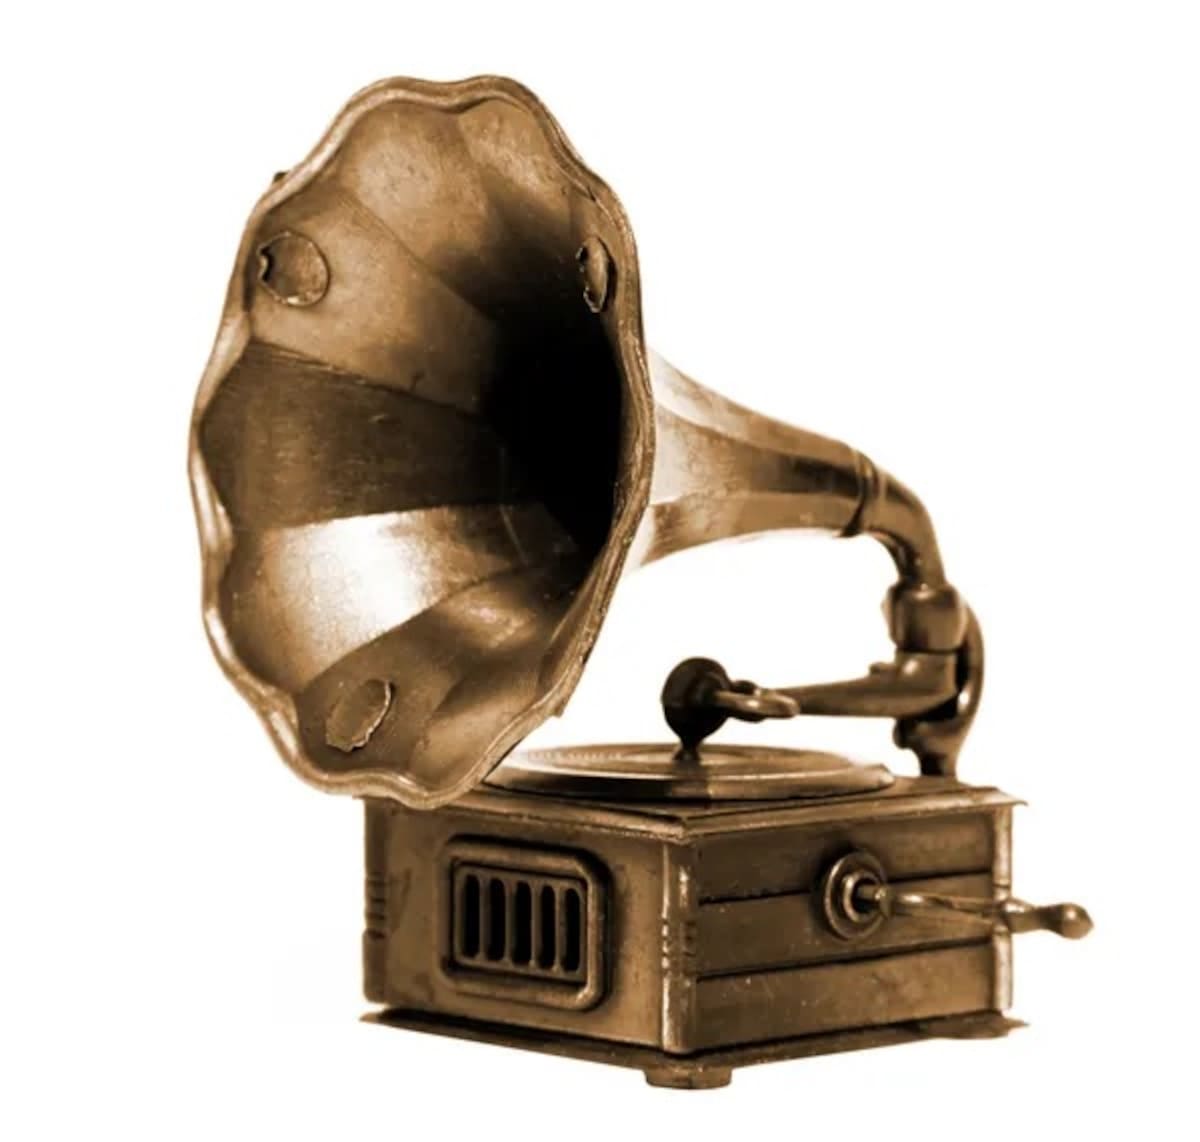 Un dato curioso sobre el fonógrafo es que Thomas Edison, su inventor, originalmente lo desarrolló en 1877 con la intención de que fuera utilizado principalmente para la grabación de mensajes de voz, como un dictáfono. Edison no anticipó inicialmente que el fonógrafo revolucionaría la música, permitiendo la grabación y reproducción de obras musicales y transformando la industria del entretenimiento.